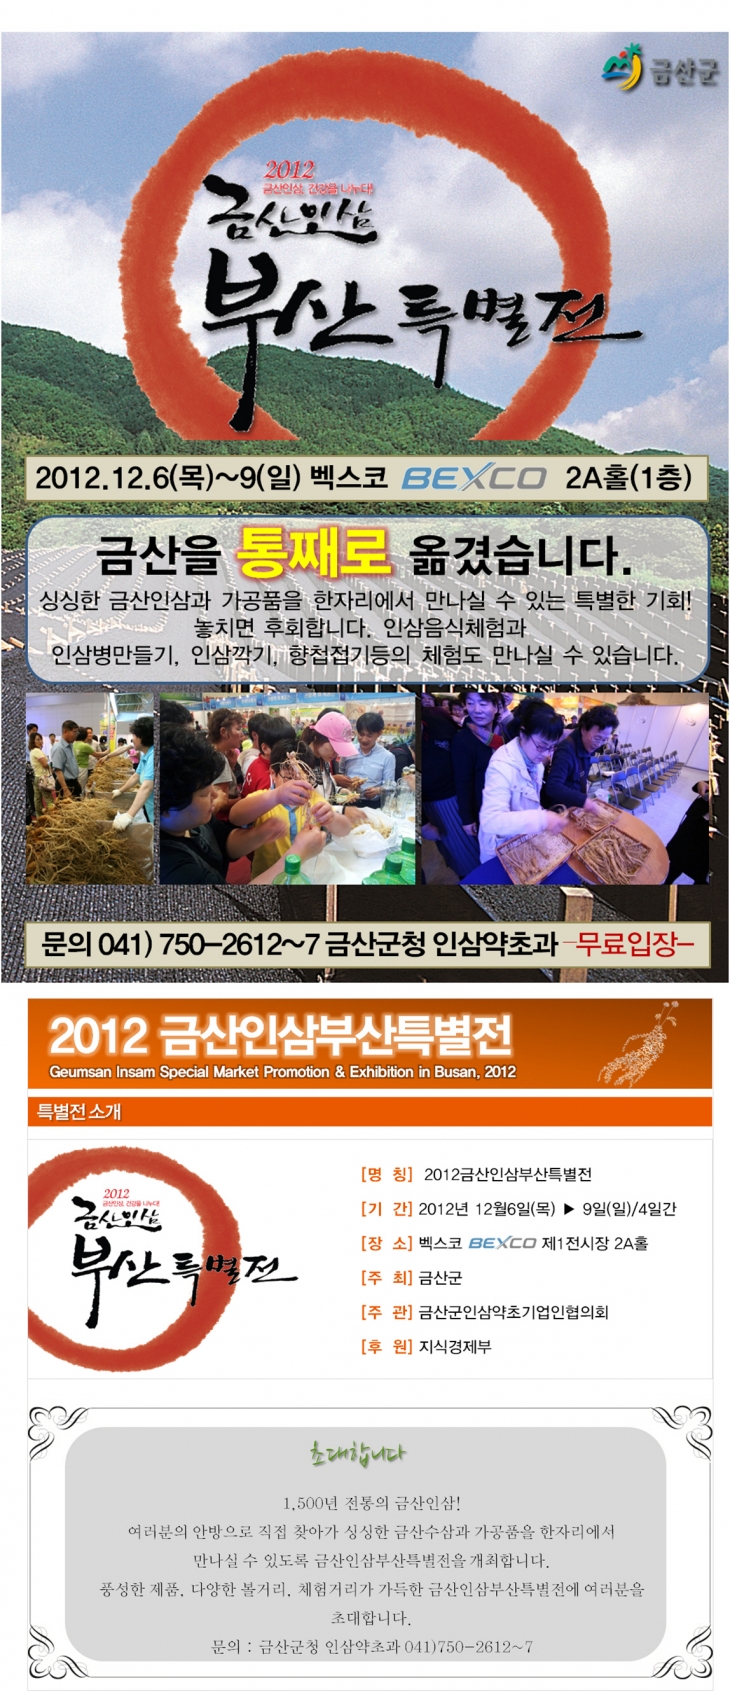 [알림]2012 금산인삼 부산특별전 개최 알림